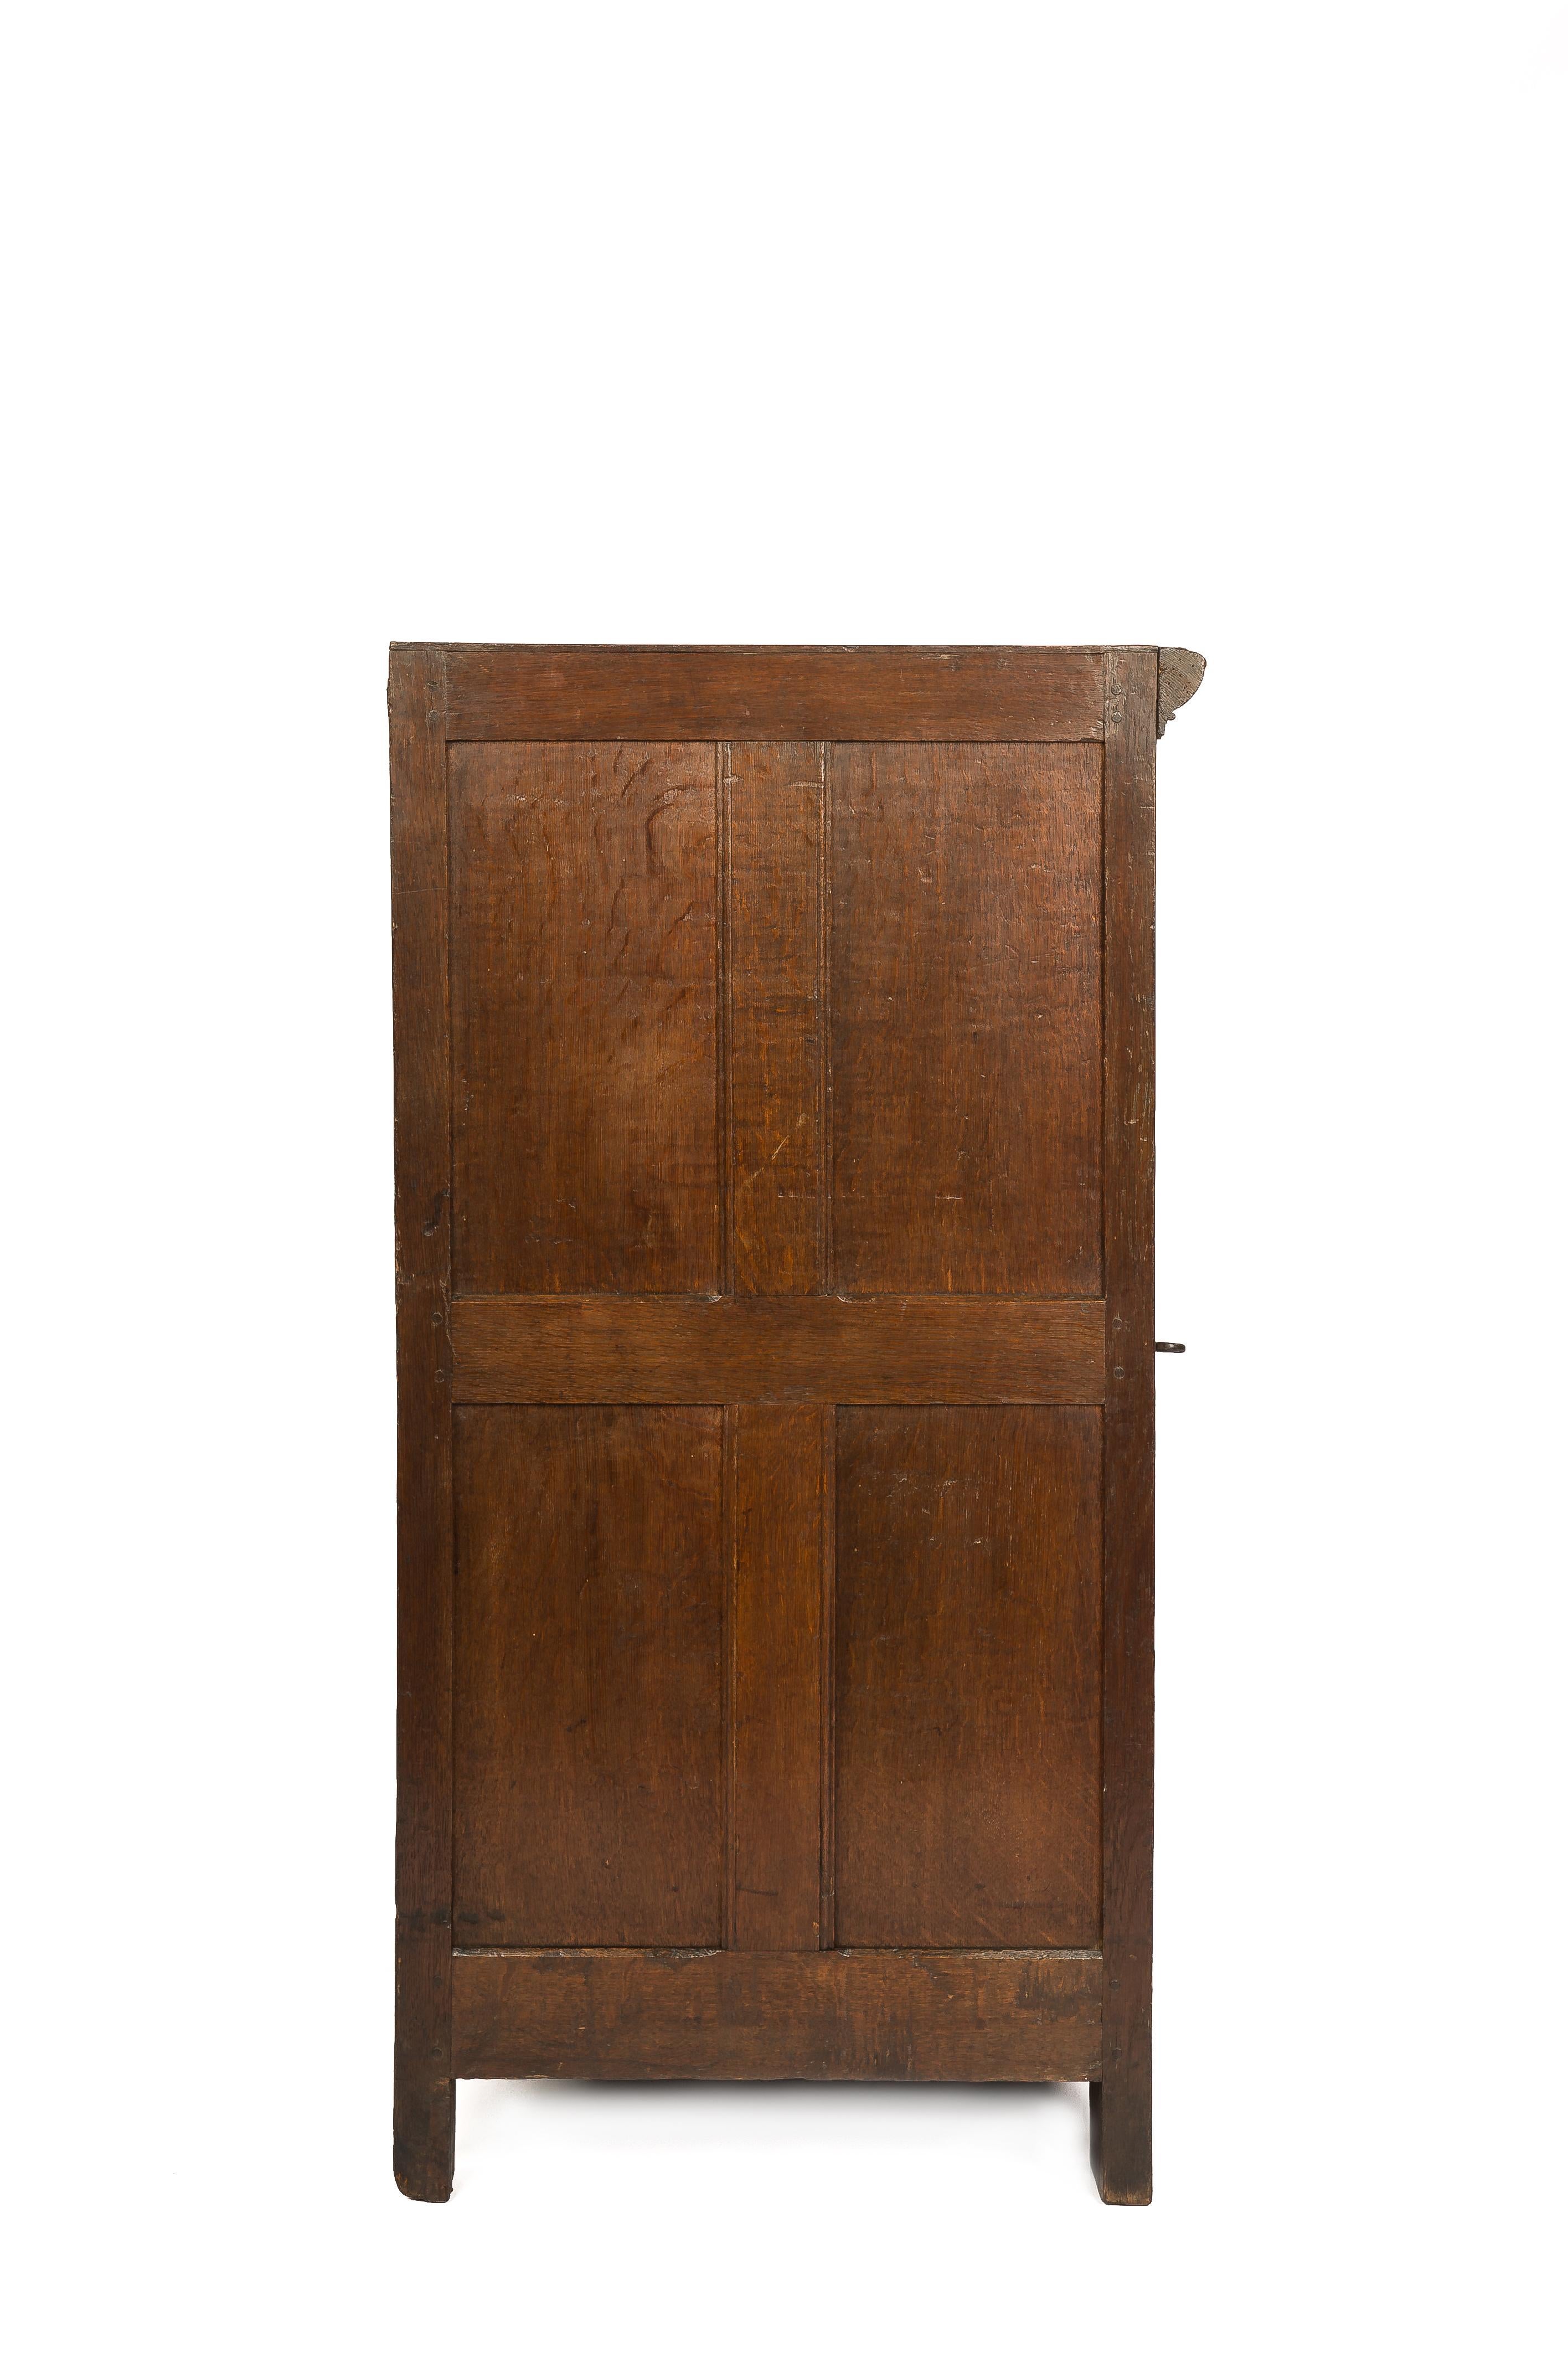 Cette élégante armoire à une porte a été fabriquée dans la partie sud des Pays-Bas à la fin du XVIIe siècle. Elle a été fabriquée en chêne scié sur quartier de la meilleure qualité, dans la tradition de la Renaissance néerlandaise, durant l'